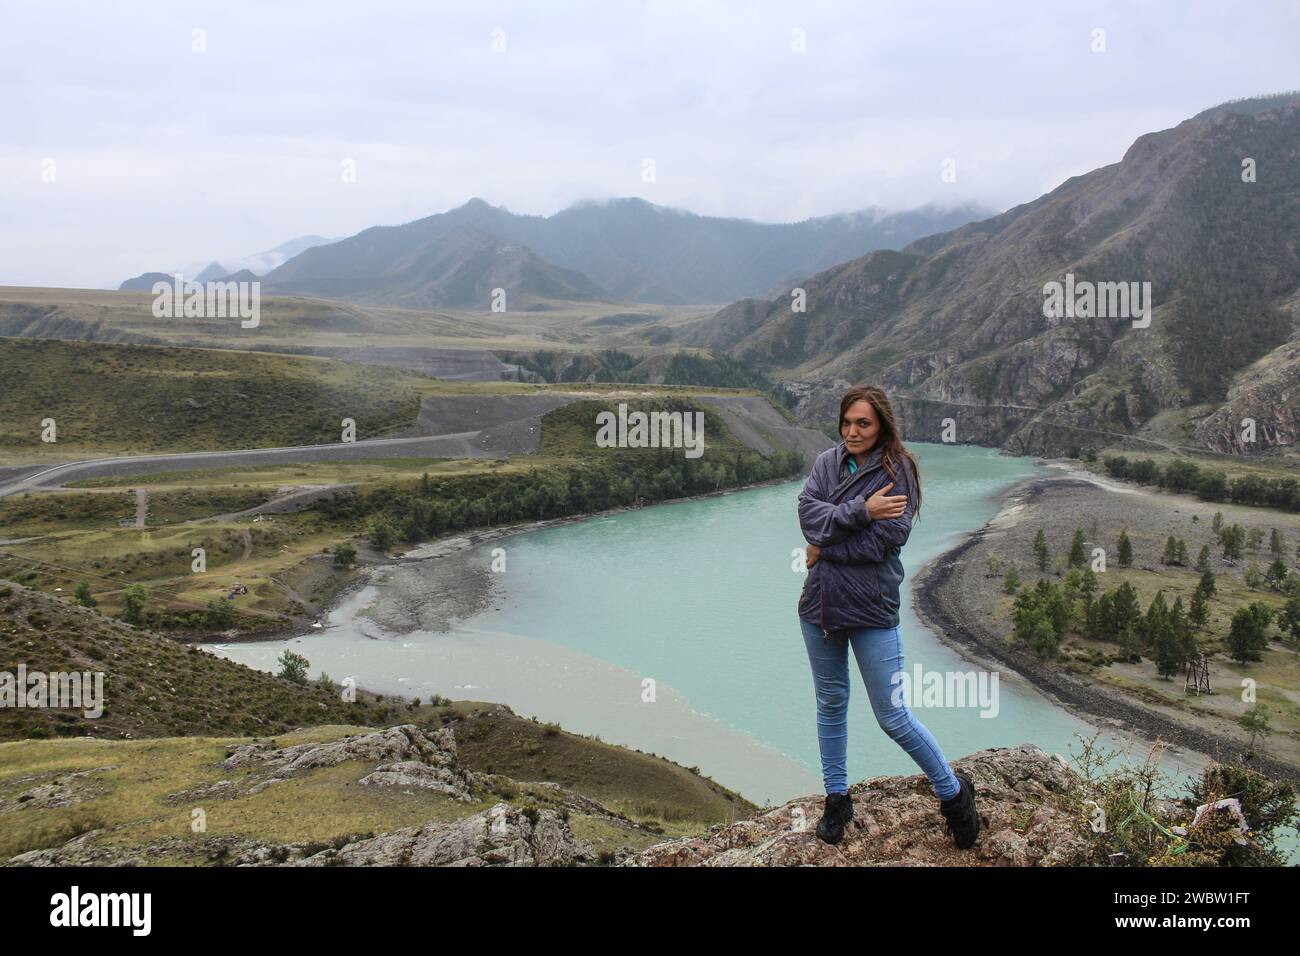 Concept Woman reist auf einer Alleinreise, stehend auf einem Hügel nahe dem Zusammenfluss von zwei Flüssen in verschiedenen Farben Chuya und Katun zu einem. Berglandschaft, Altai Republik, Russland. Stockfoto